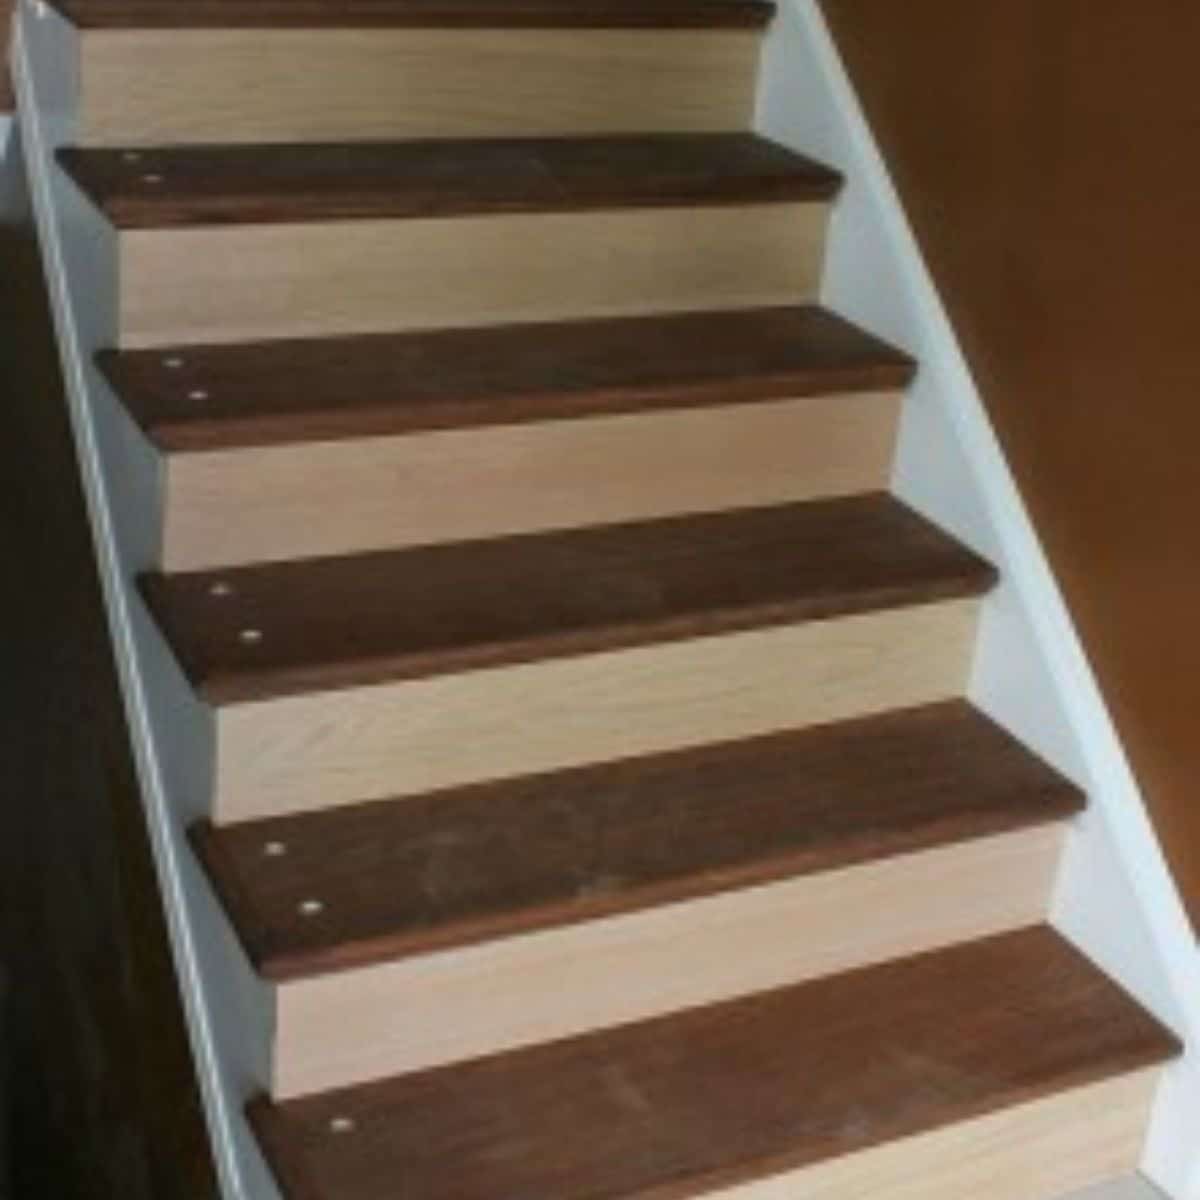 Wooden stairway